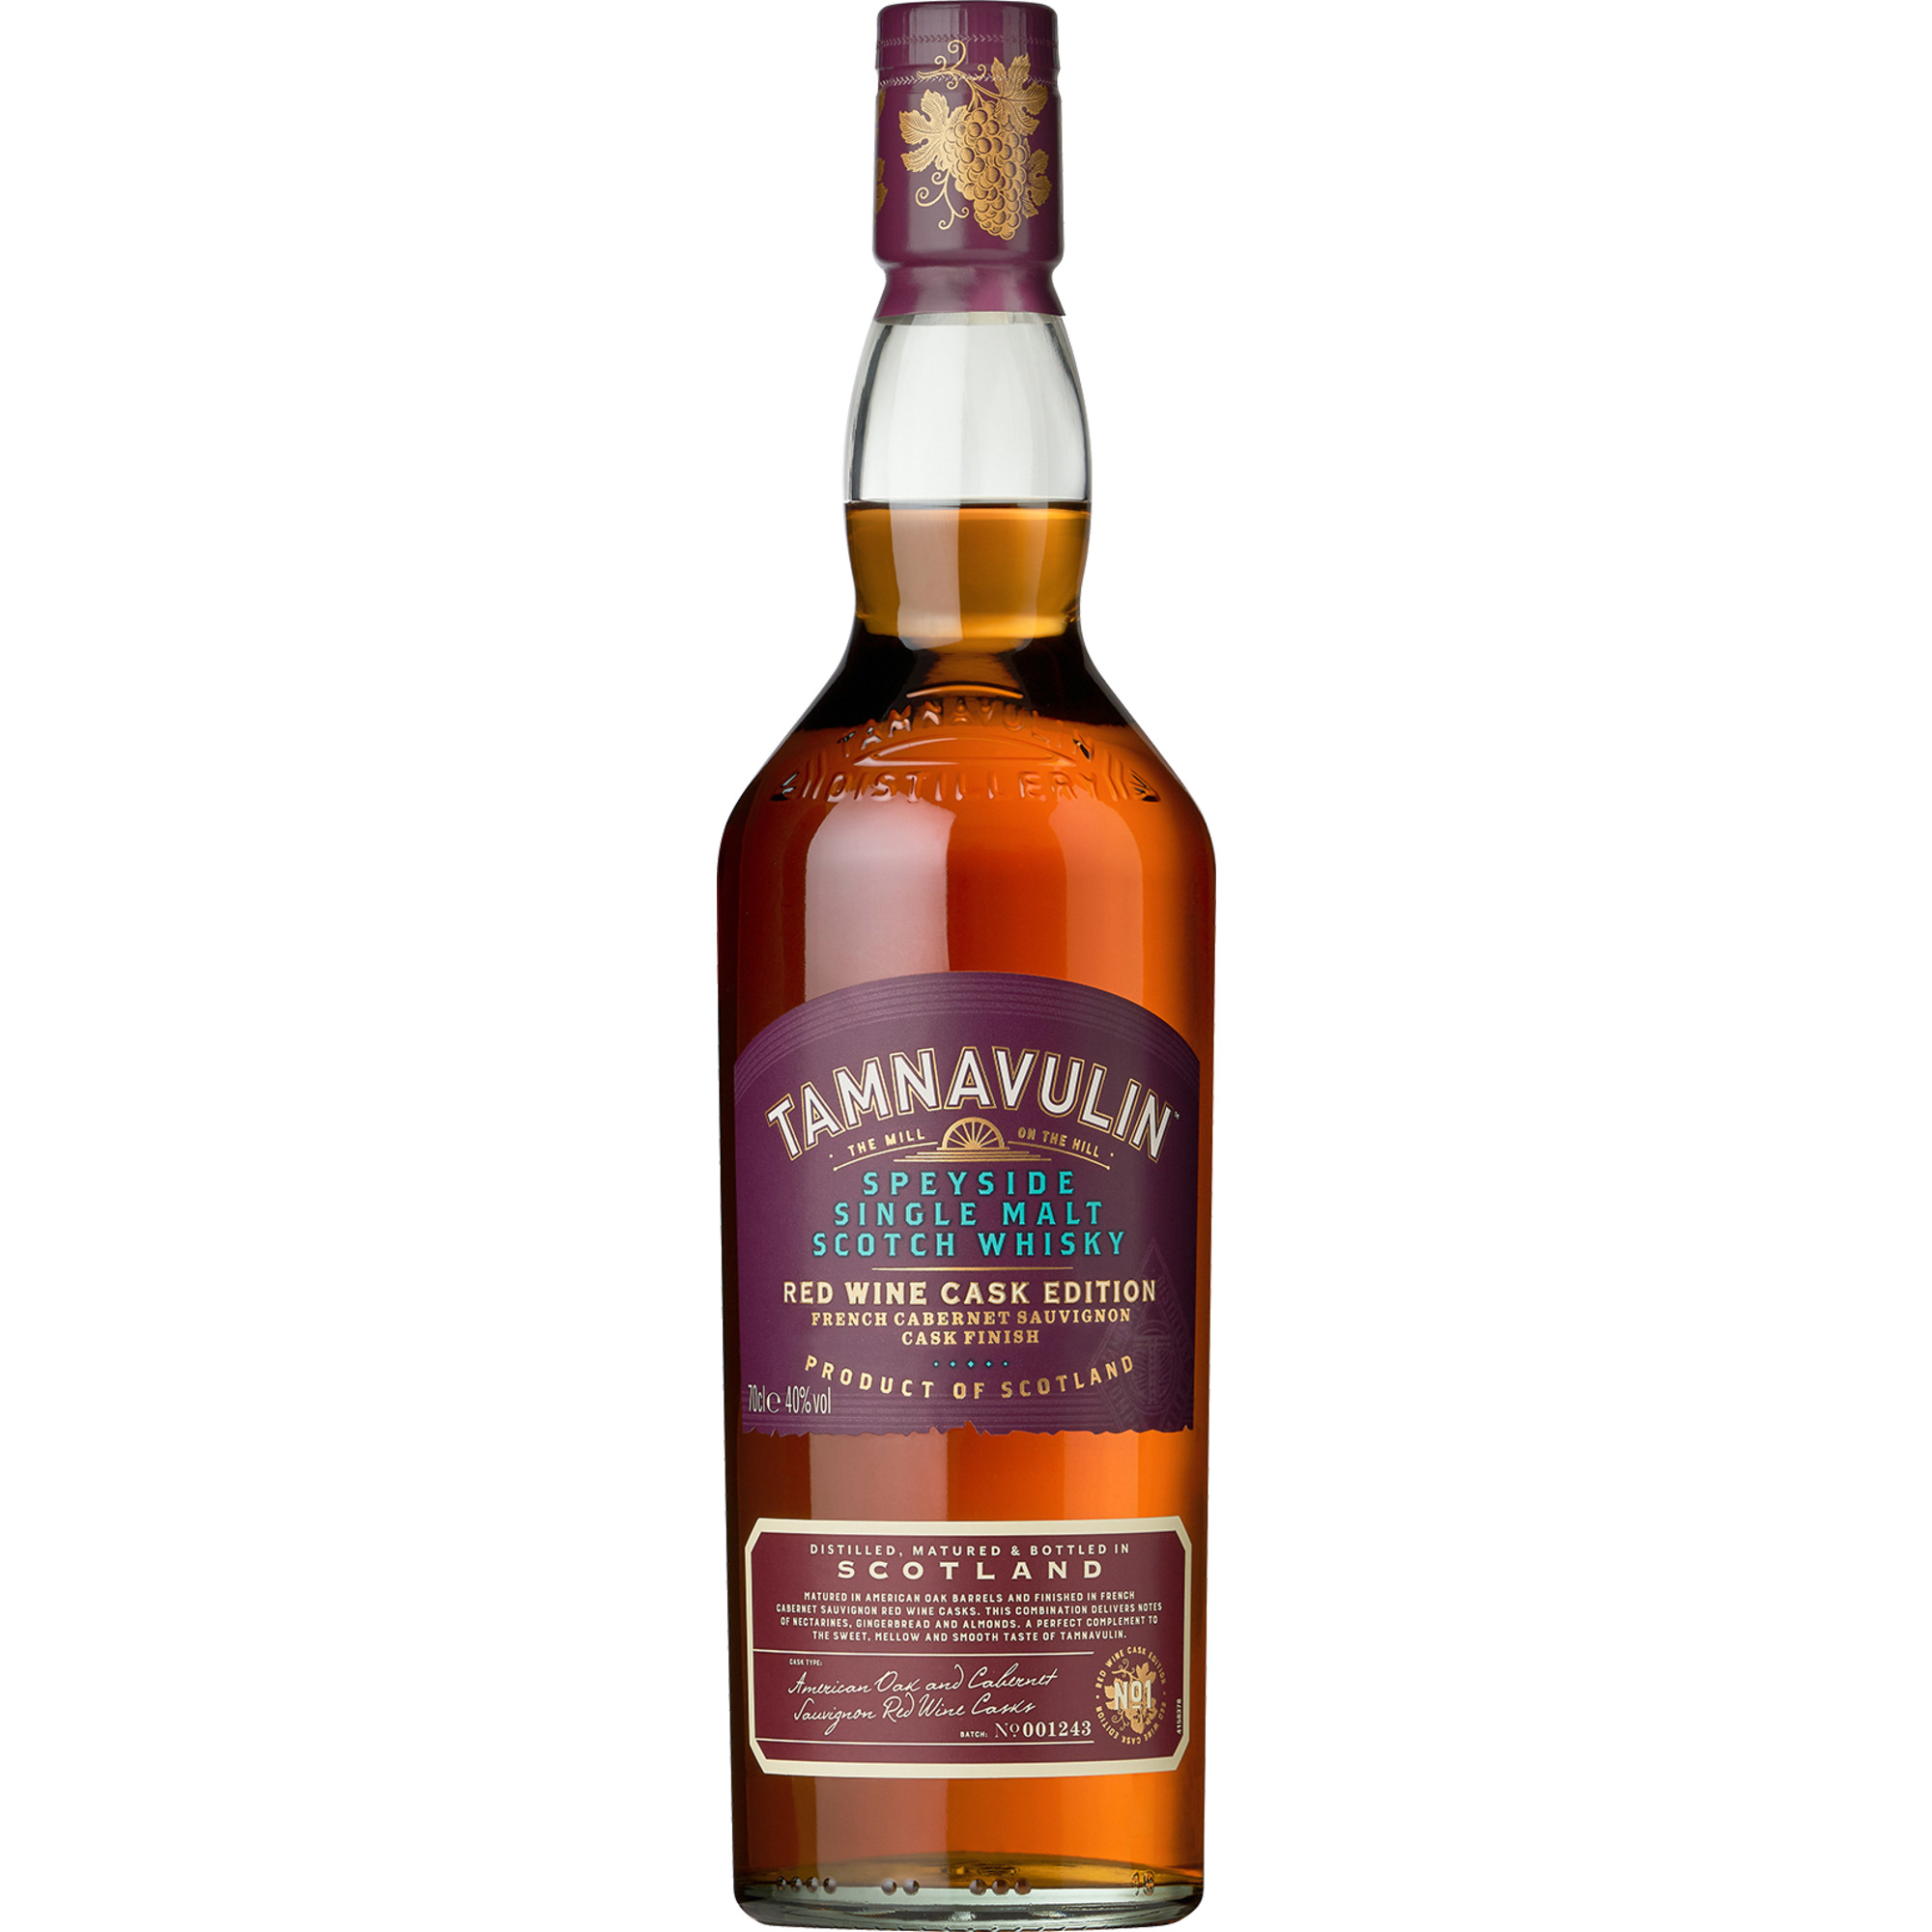 Tamnavulin Single Malt Scotch Whisky, Red Wine Cask 40 % vol. 0,7 L, Schottland, Spirituosen Tamnavulin Distillery, Ballindalloch, Banffshire, AB37 9JA, Scotland Hawesko DE